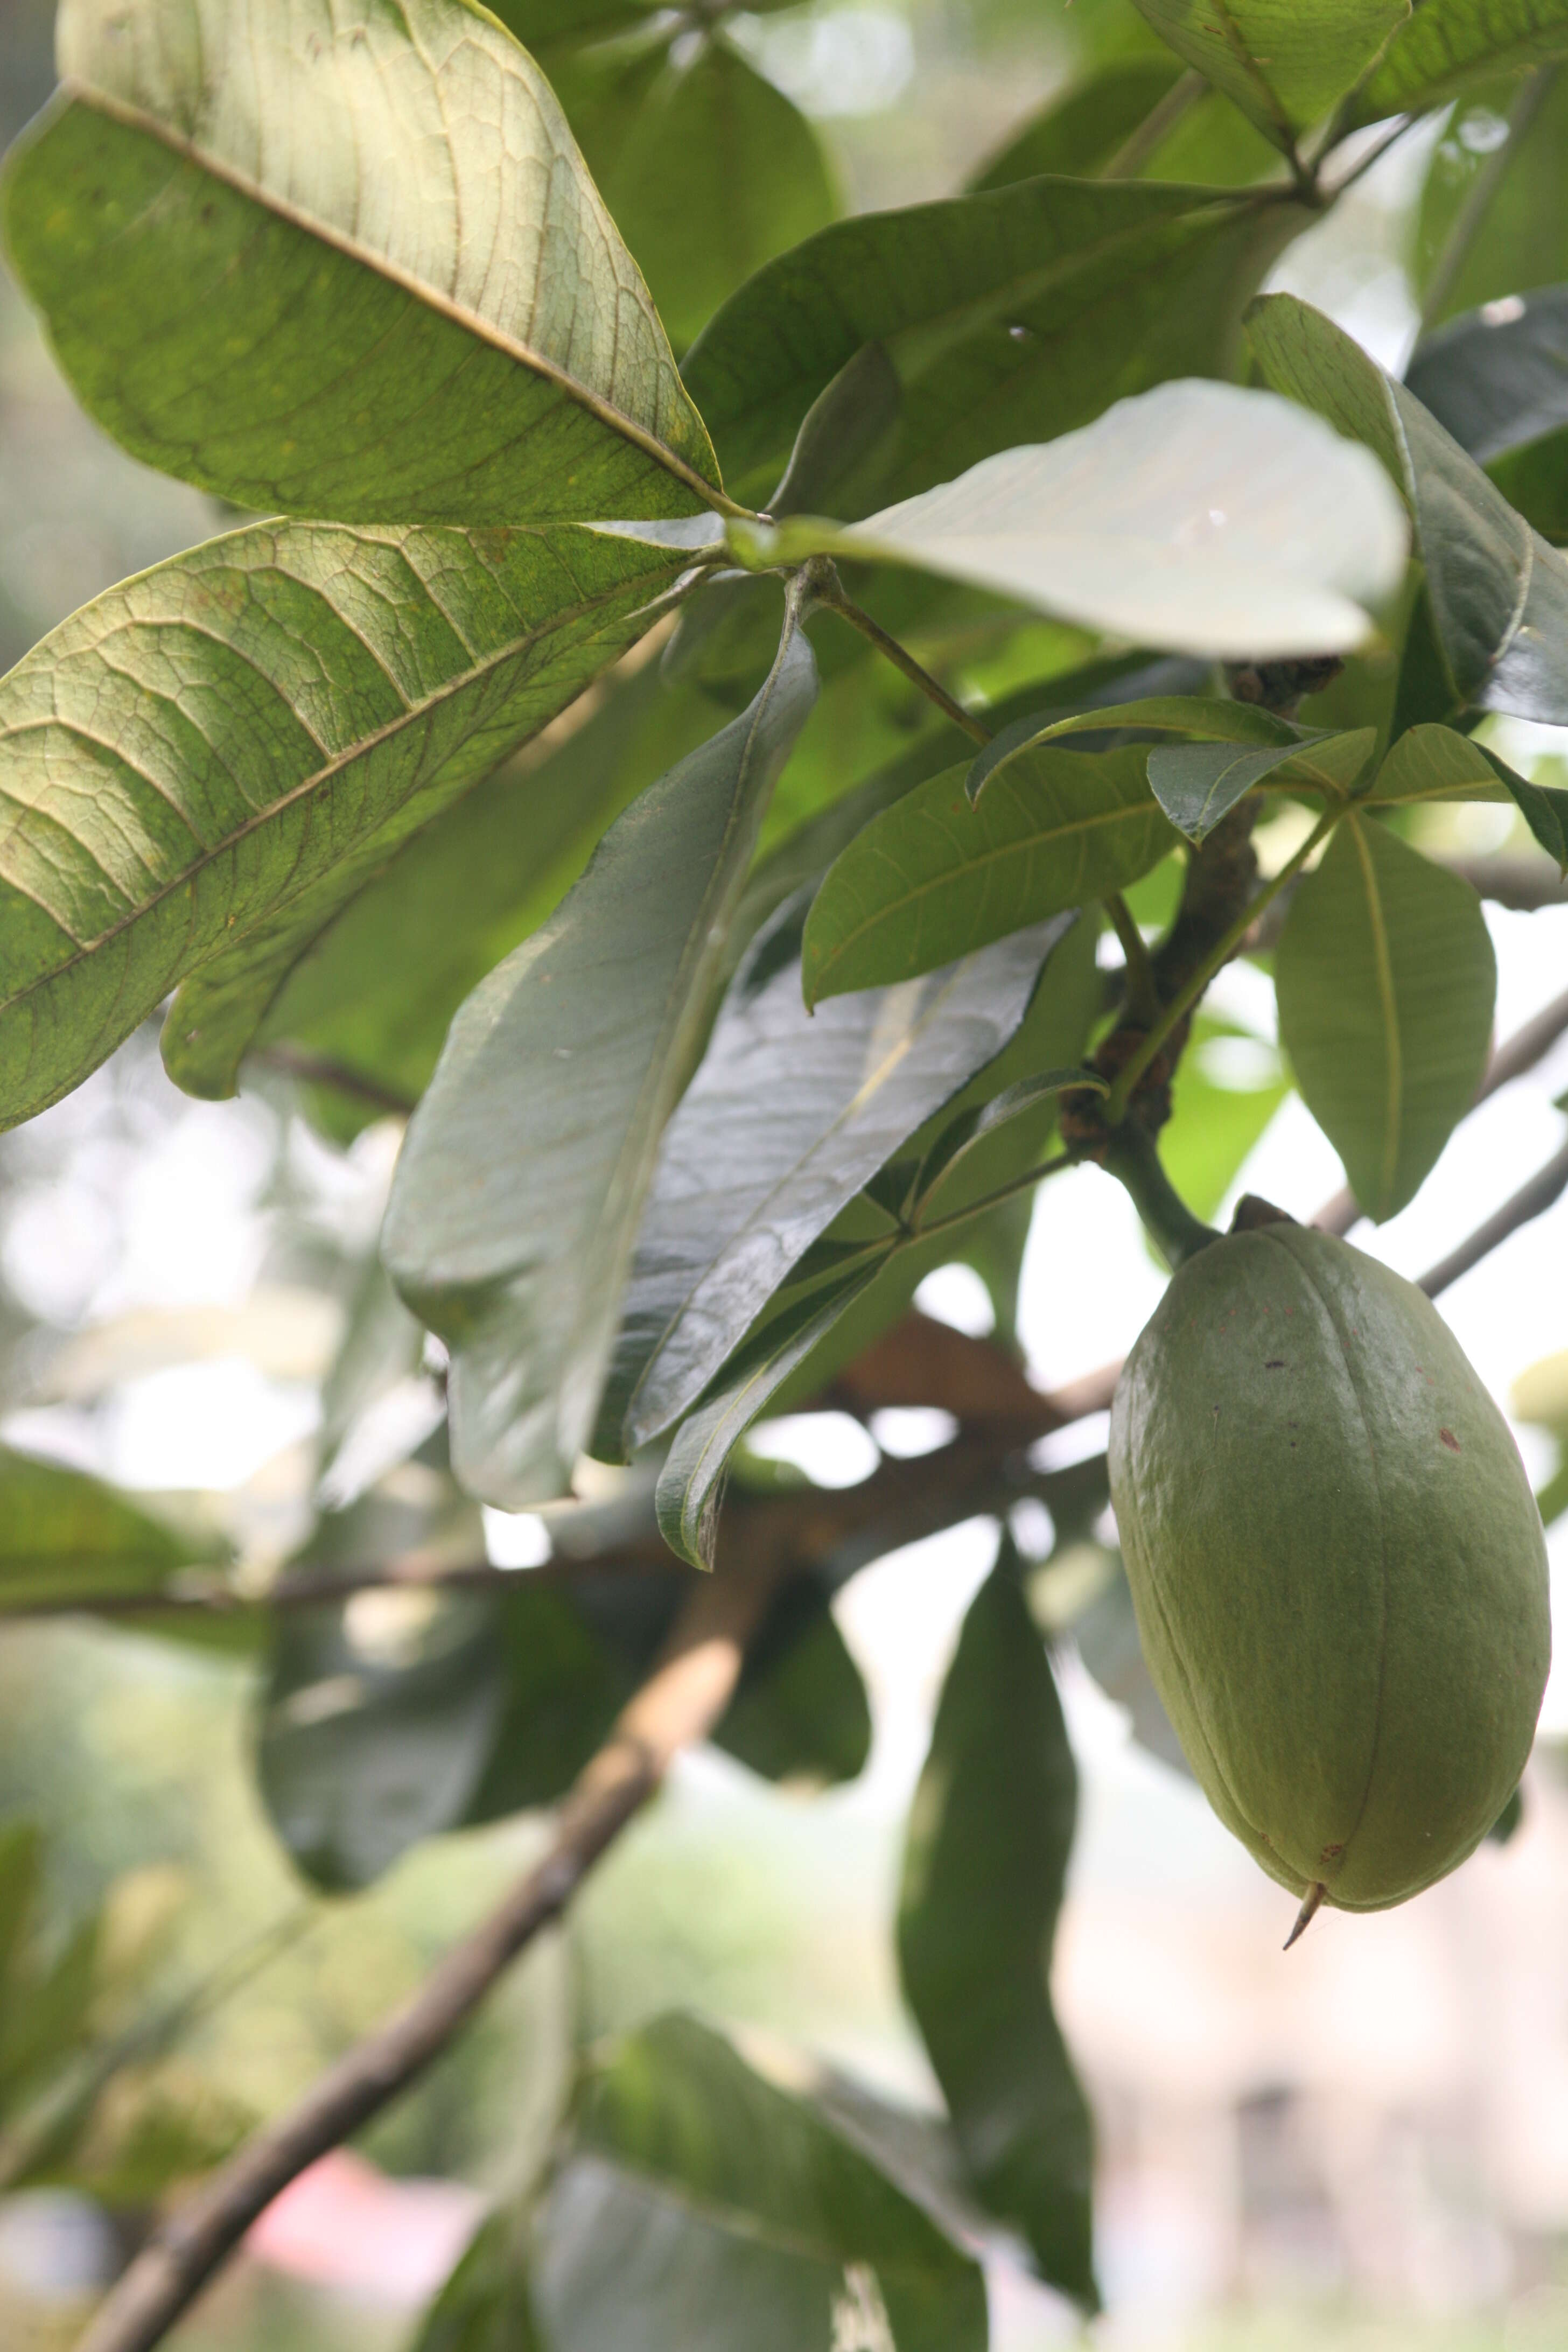 Image of Guiana-chestnut